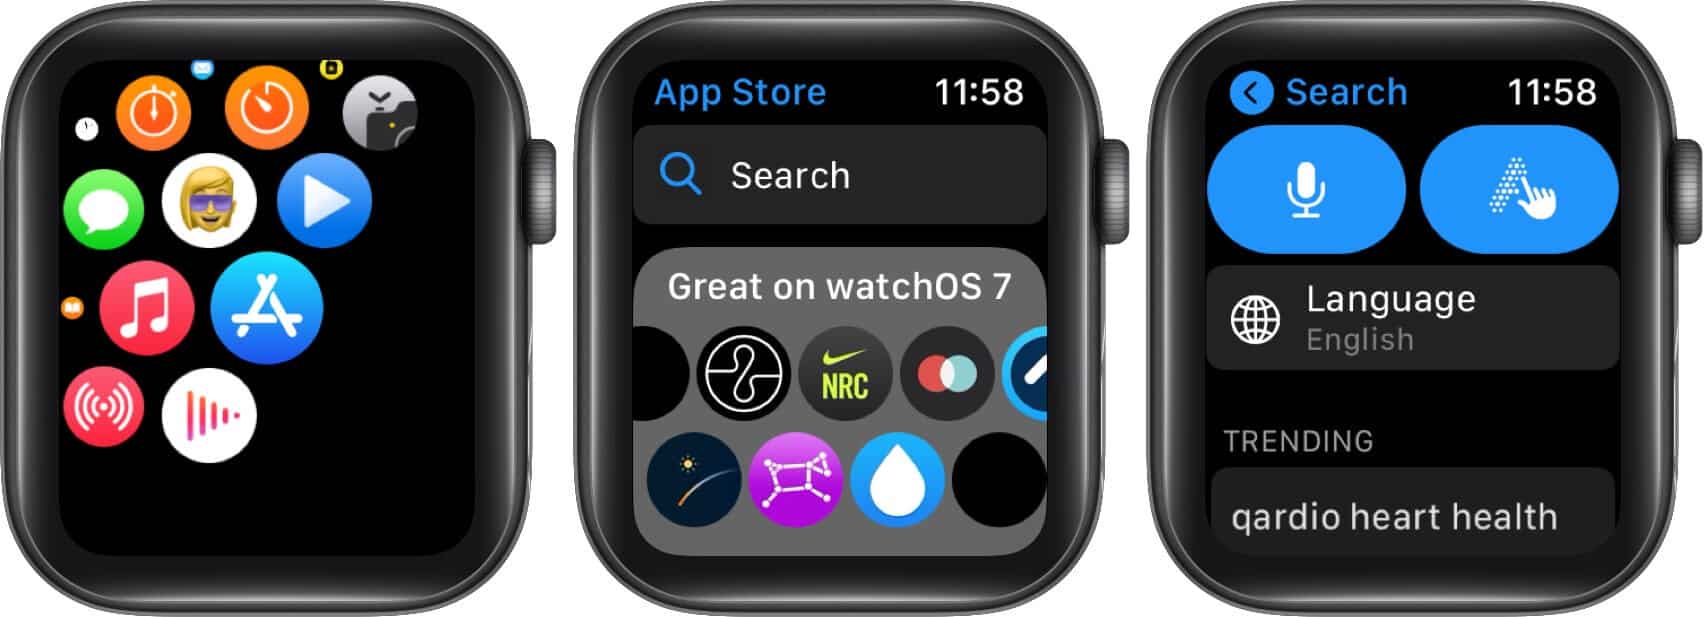 Öffnen Sie den App Store, tippen Sie auf Suchen und verwenden Sie Voice oder Scribble auf der Apple Watch